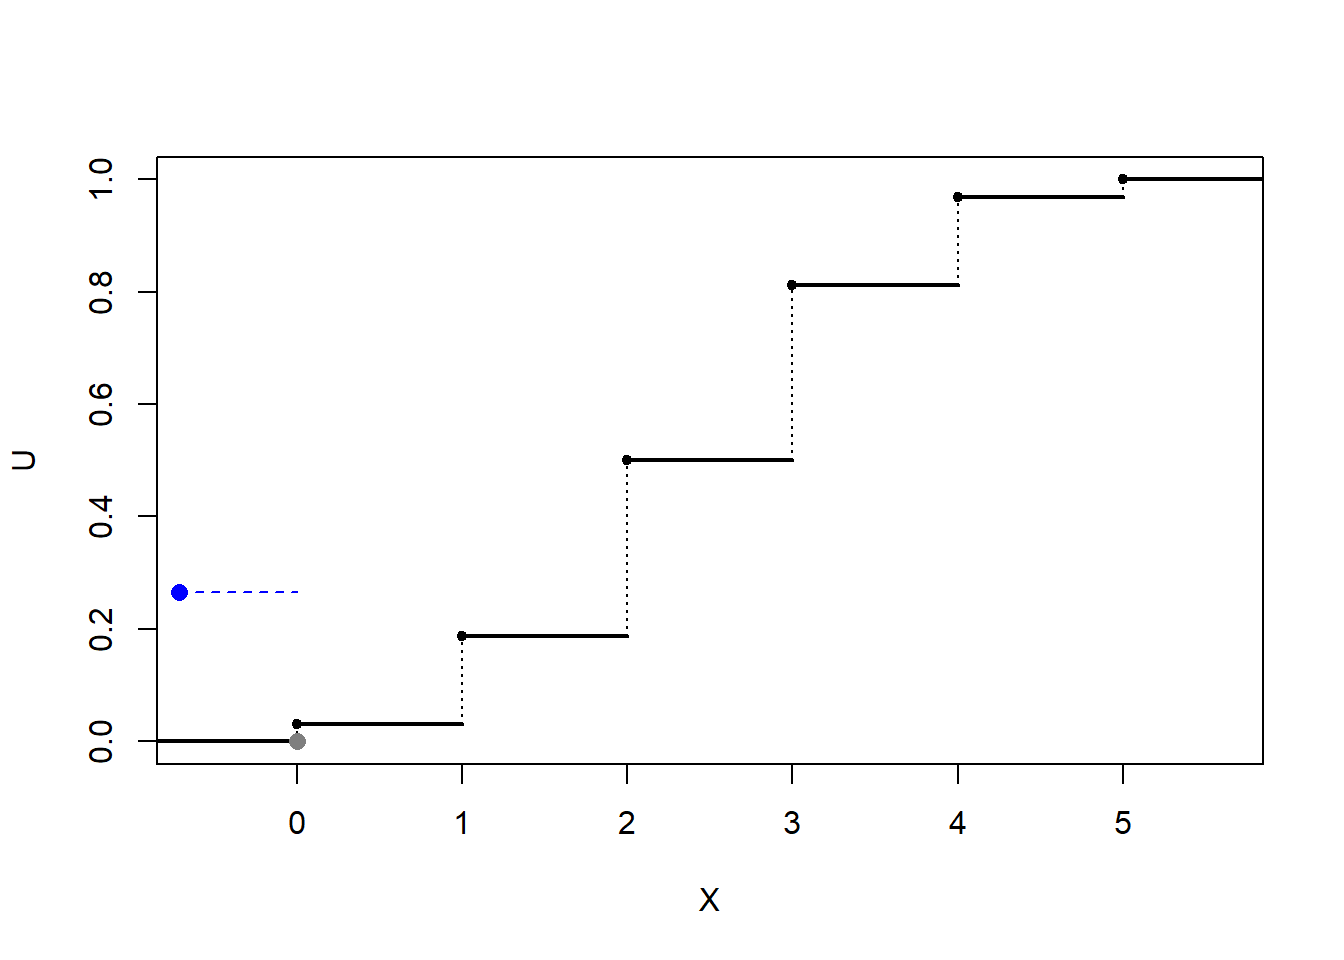 Ilustración de la simulación de una distribución discreta mediante transformación cuantil (con búsqueda secuencial).